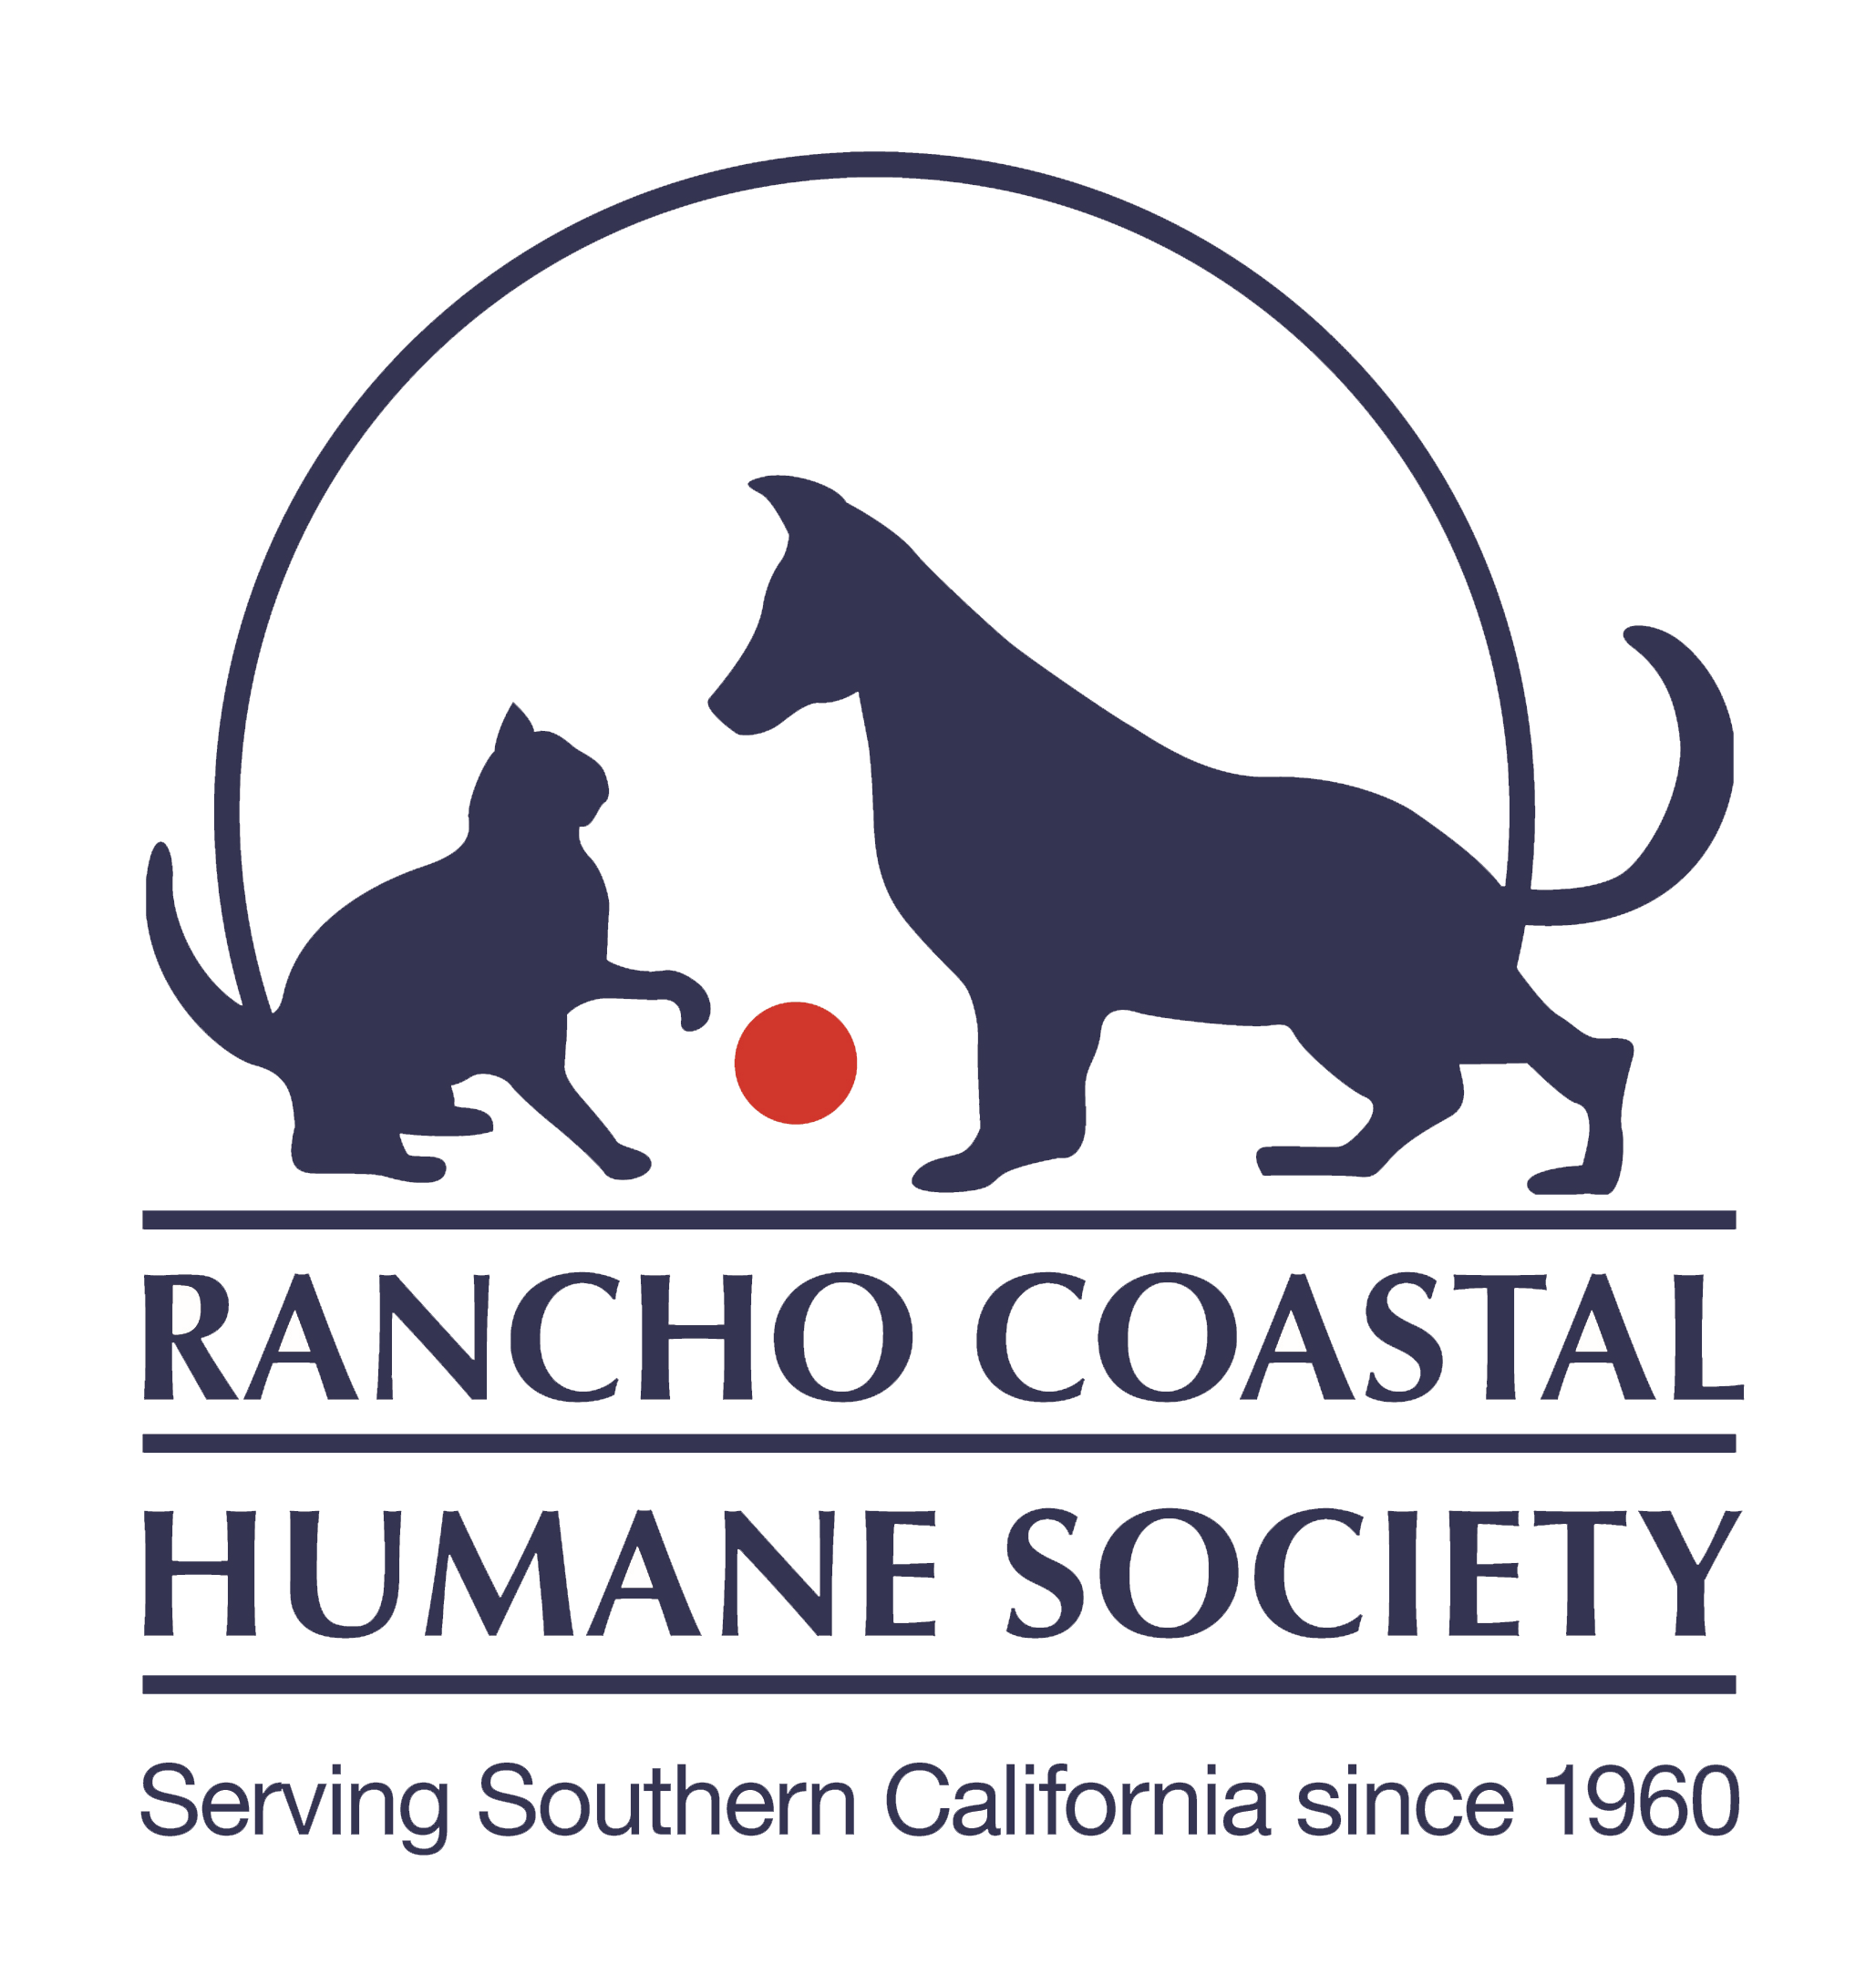 Rancho Coastal Humane Society Logo PNG